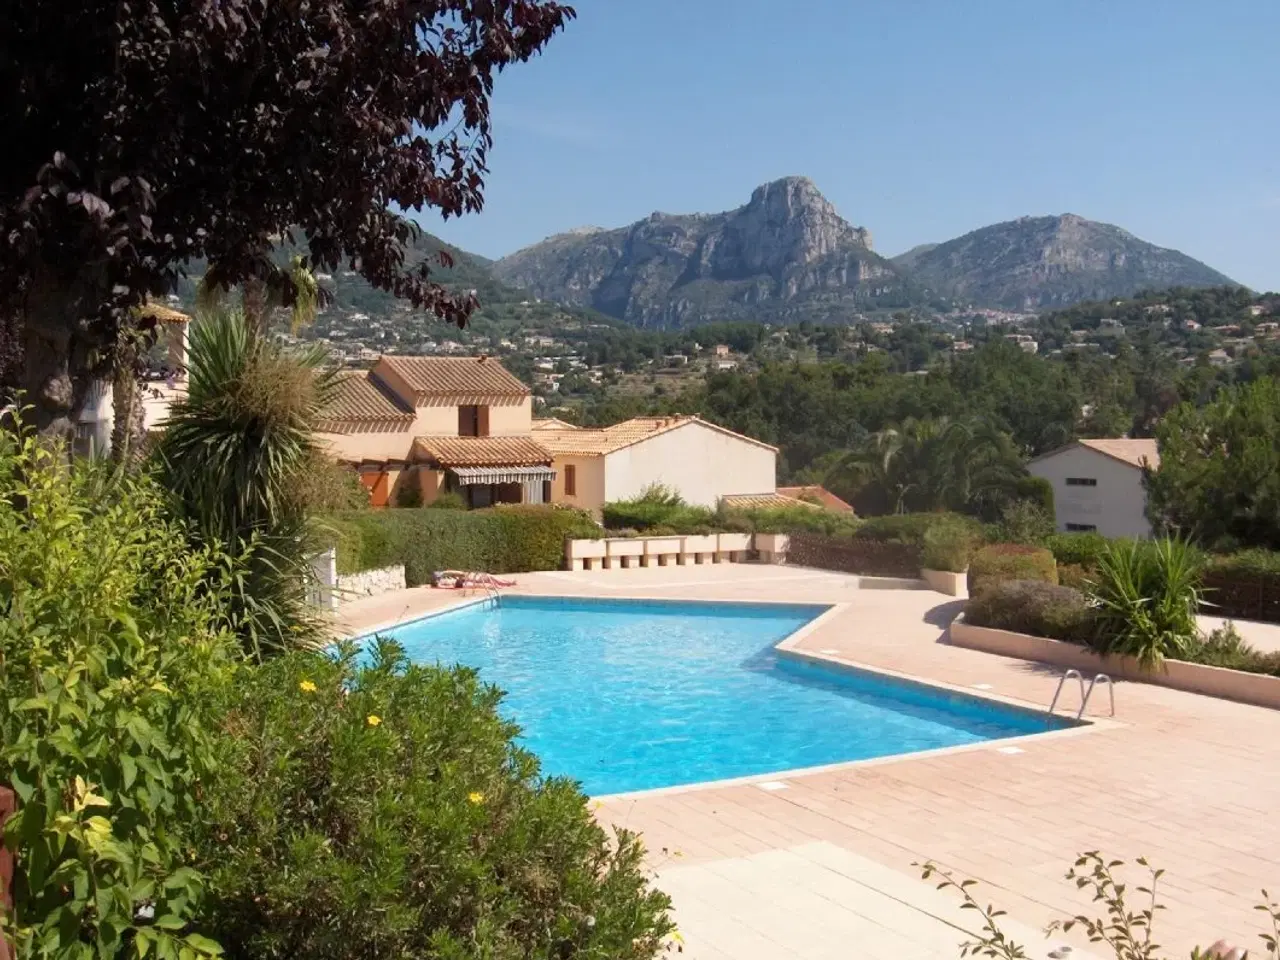 Billede 1 - Provence / Vence - hus med pool. Tæt ved Nice / Cannes